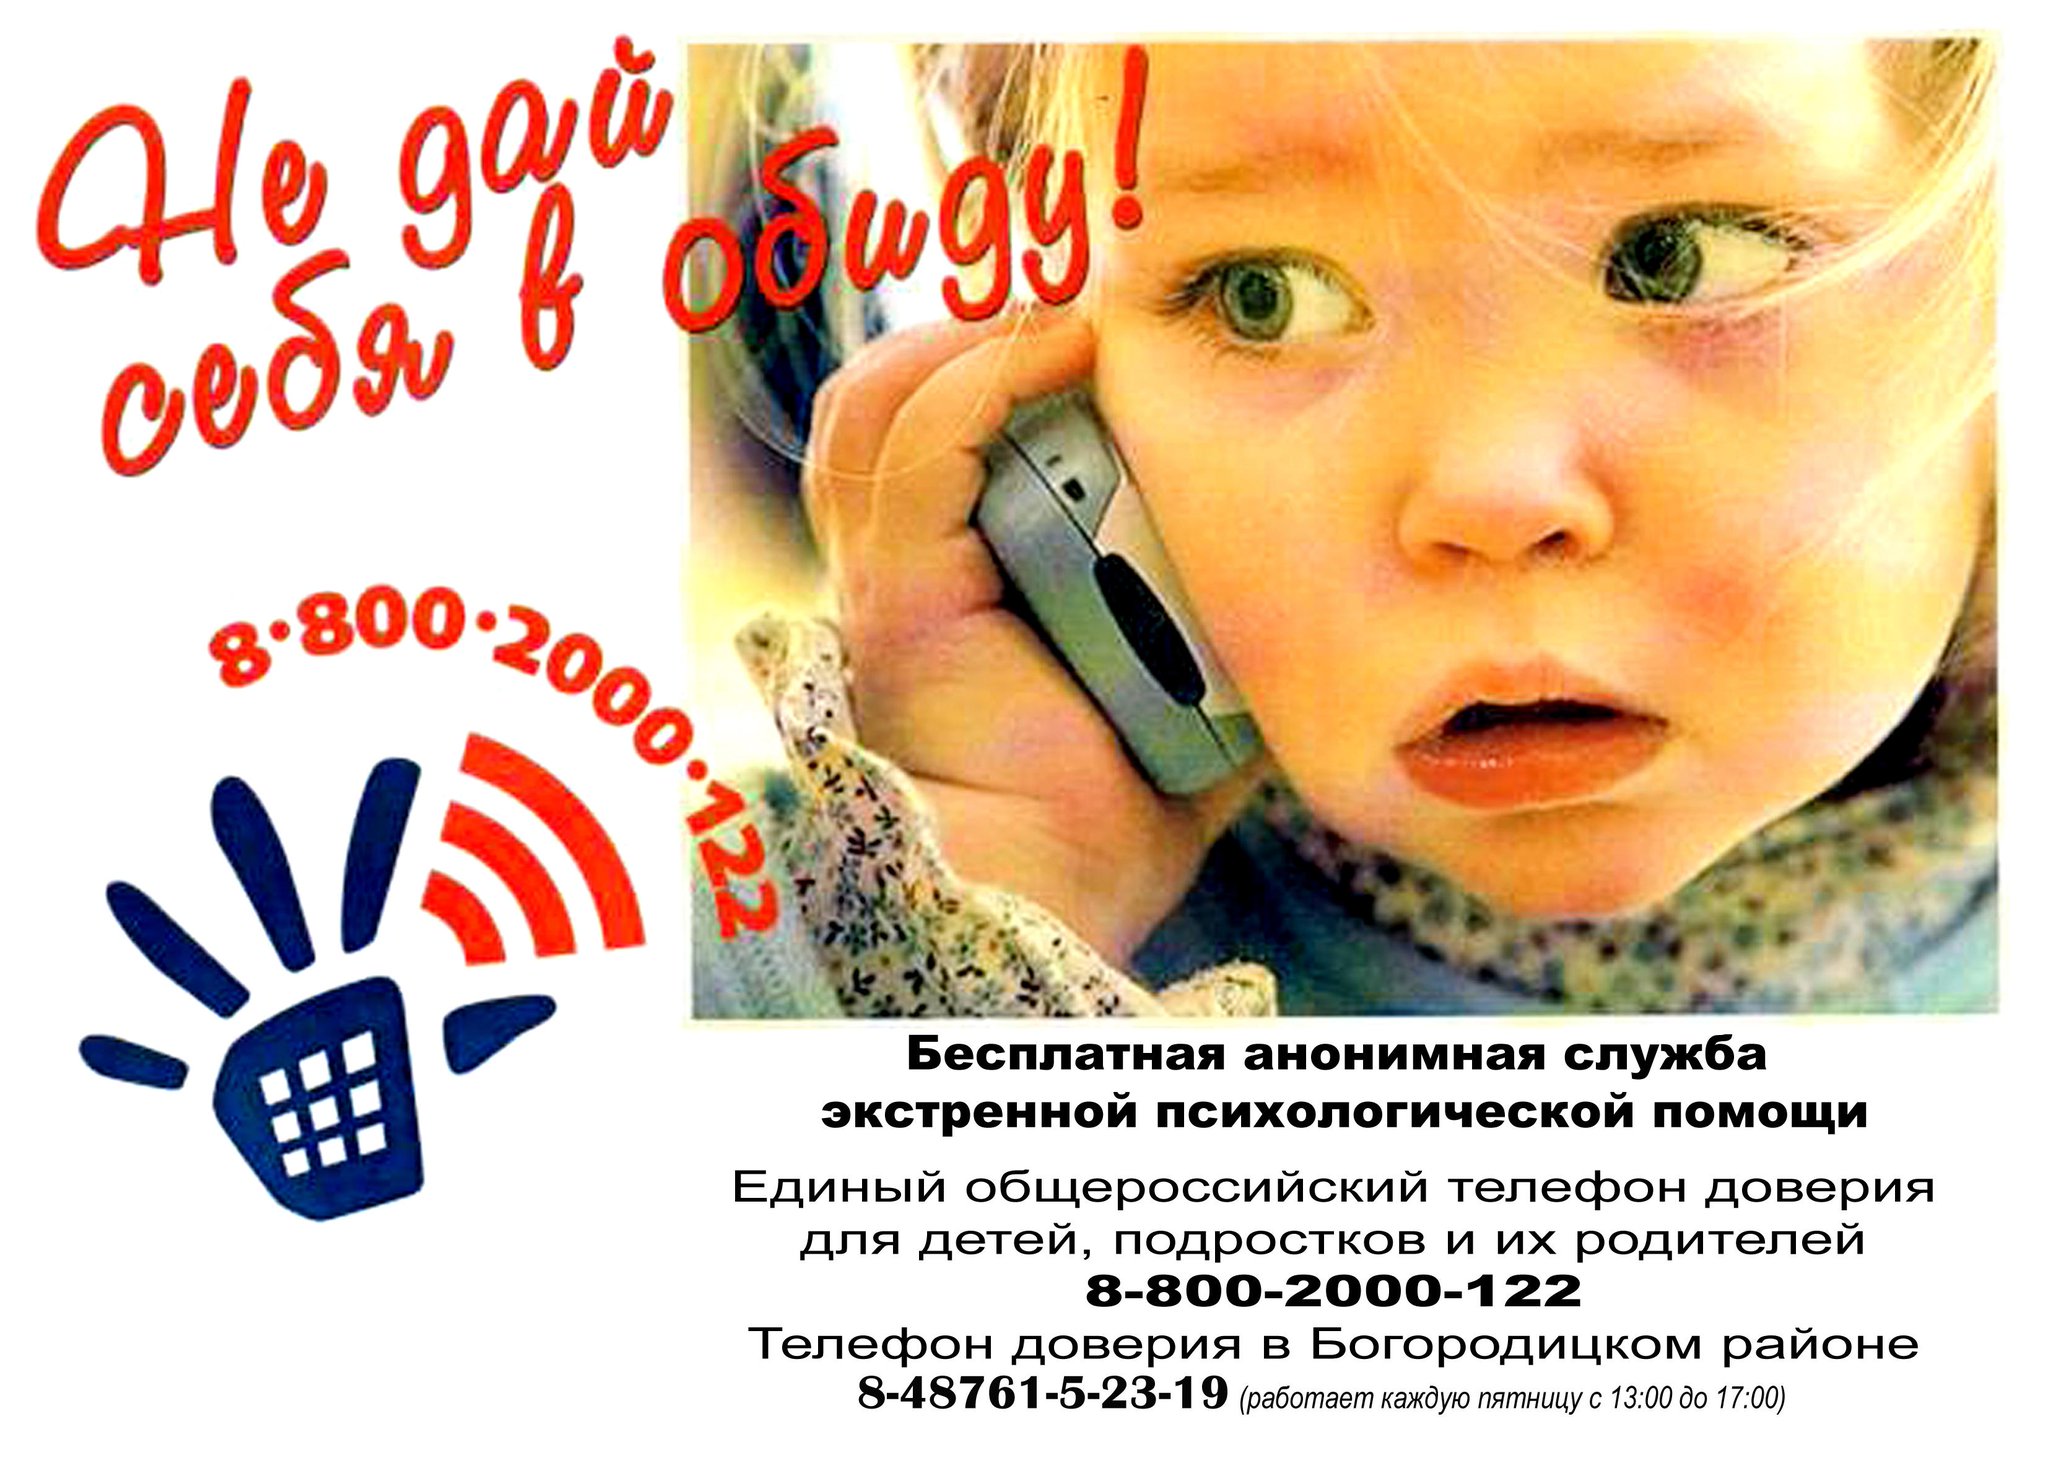 Лайфхаки для всех возрастов: сайт детского телефона доверия поможет в трудную минуту